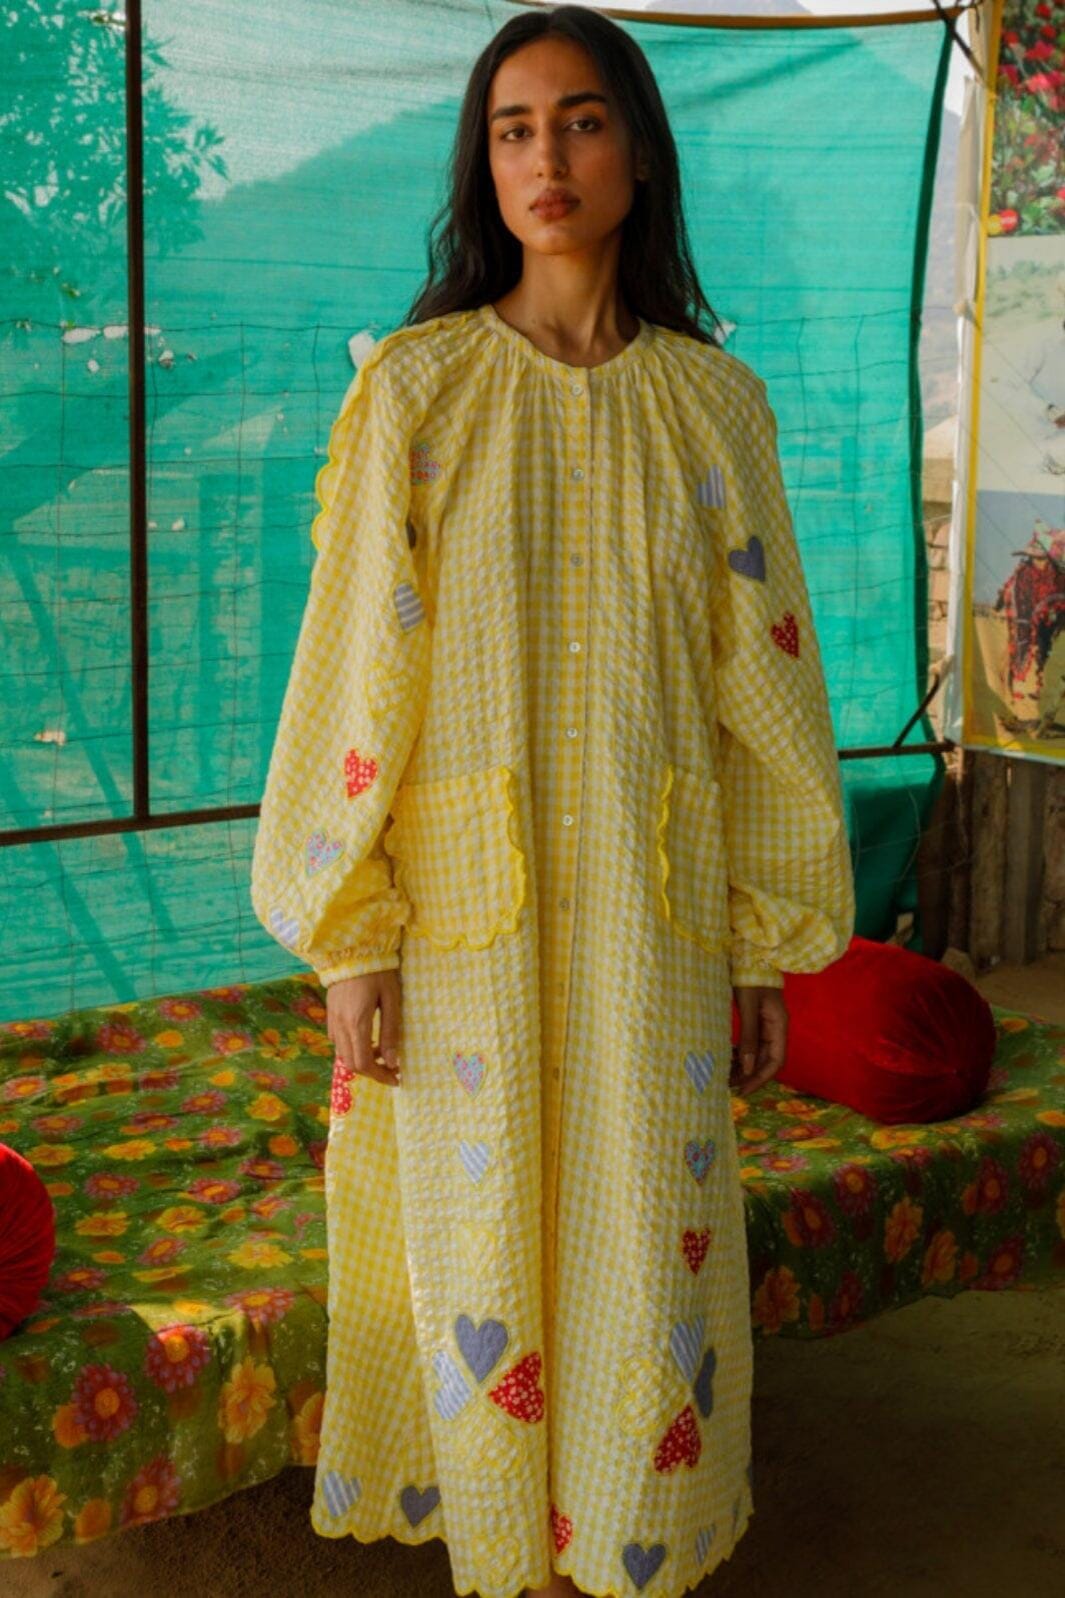 Sissel Edelbo - Kamal Organic Cotton Dress SE 1233 - Yellow Checks Kjoler 